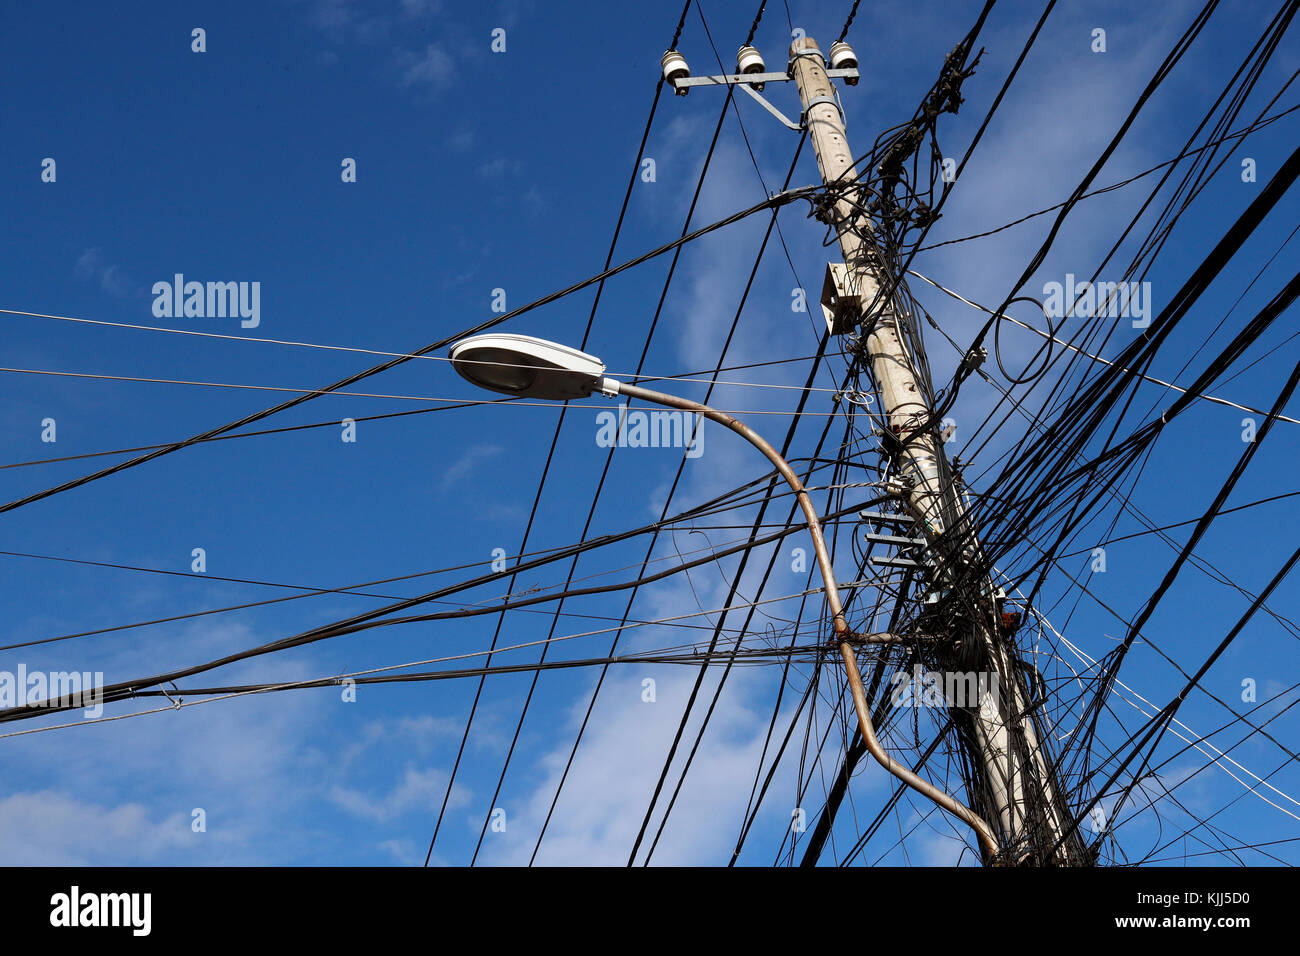 Low Angle View d'électricité pylône contre ciel clair. Kon Tum. Le Vietnam. Banque D'Images